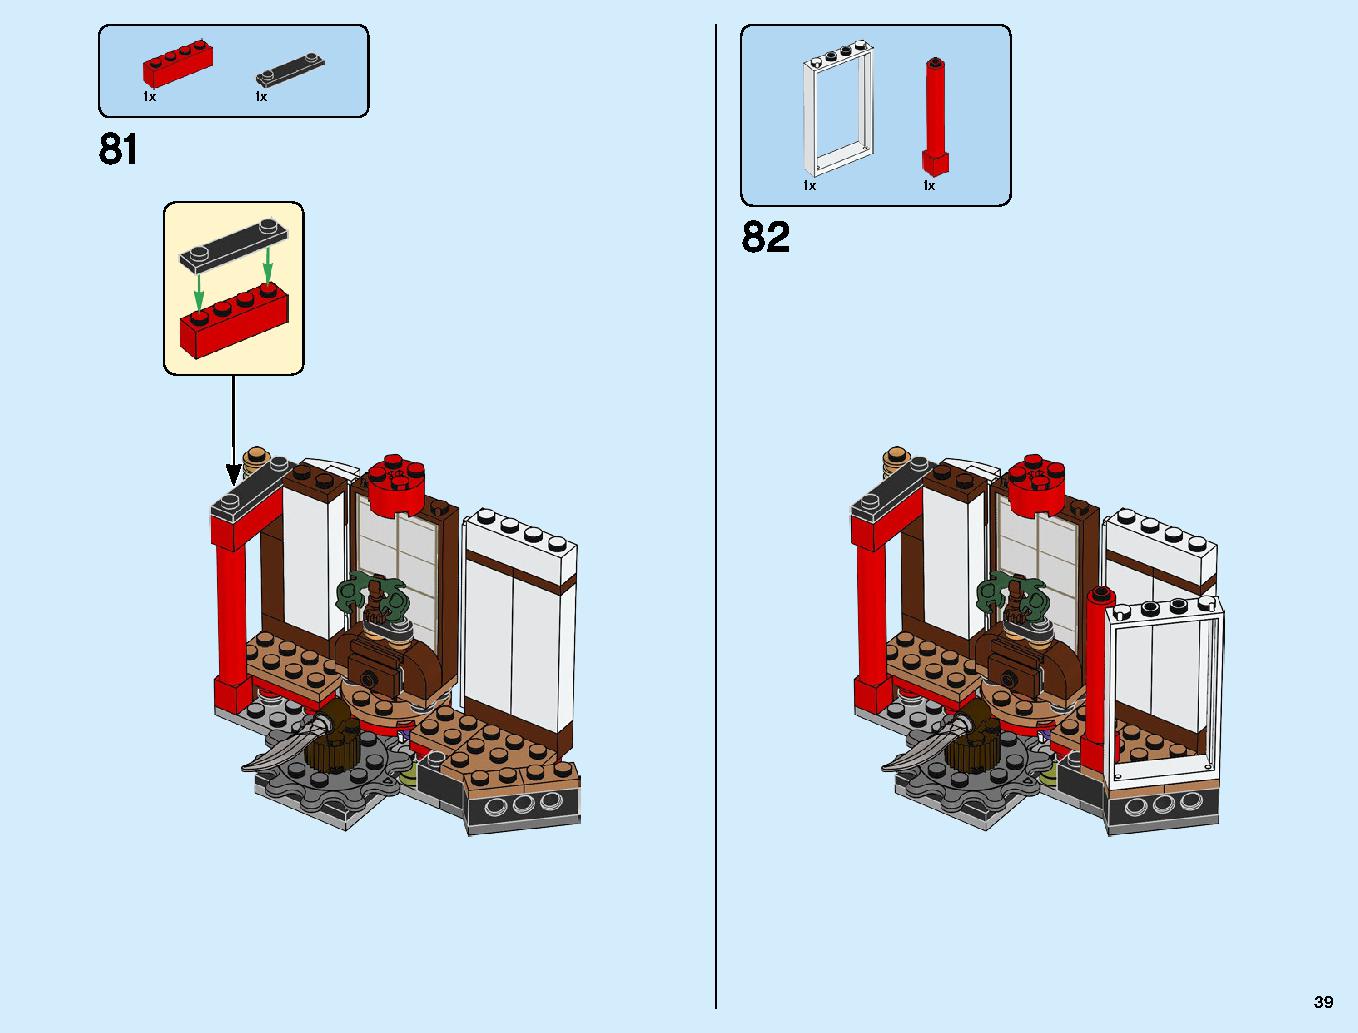 ニンジャ道場 70670 レゴの商品情報 レゴの説明書・組立方法 39 page